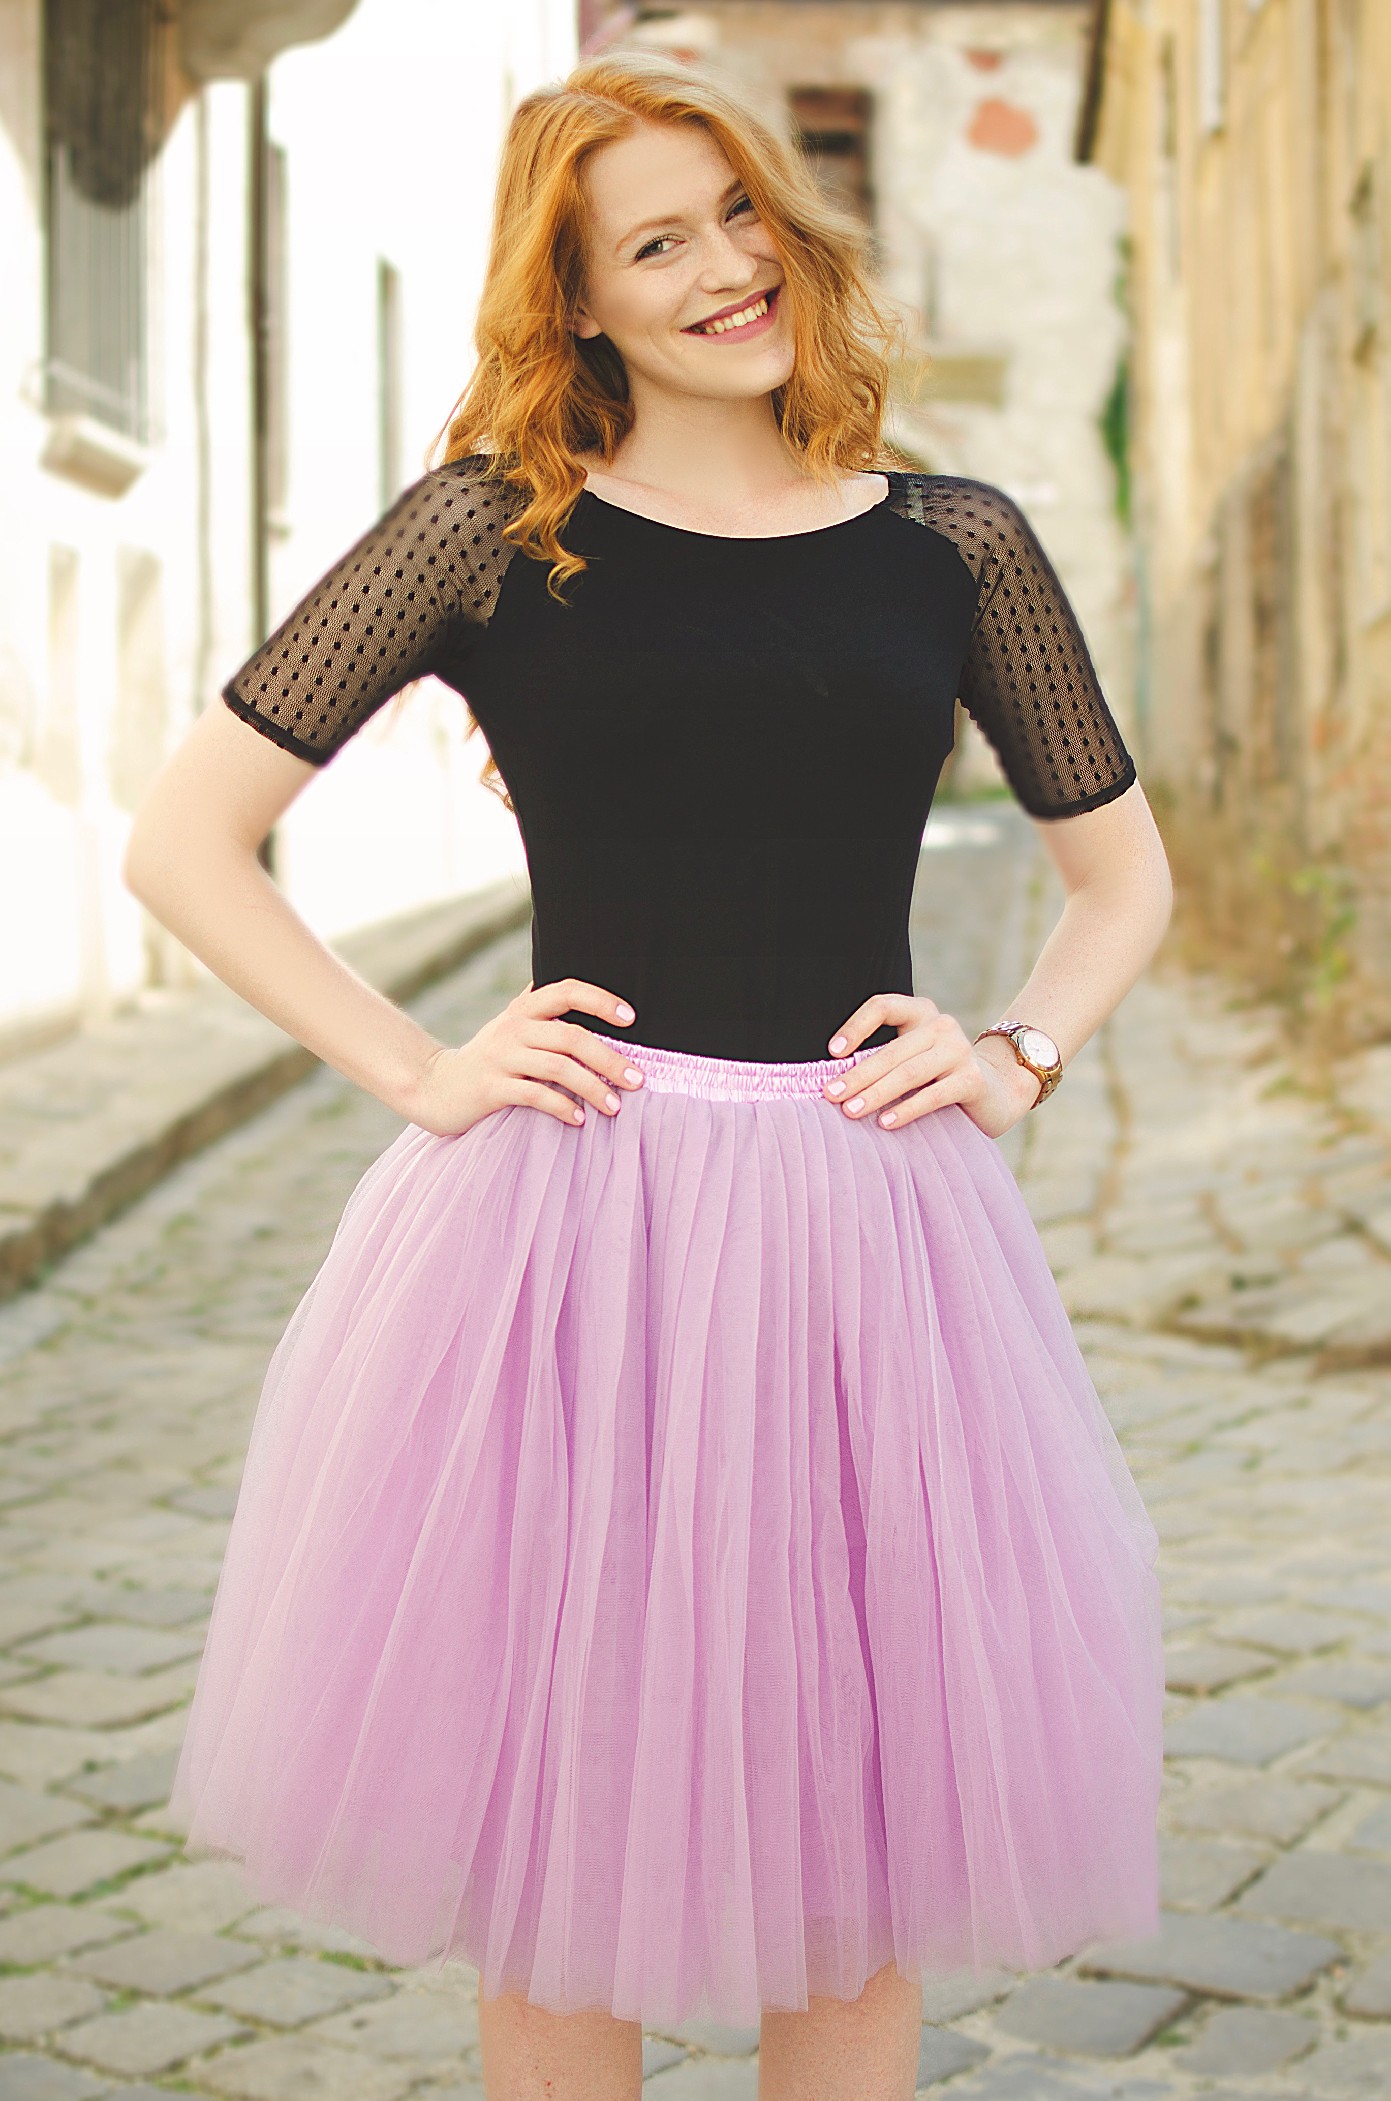 Tylová TUTU sukně fialová nad kolená - 50 cm